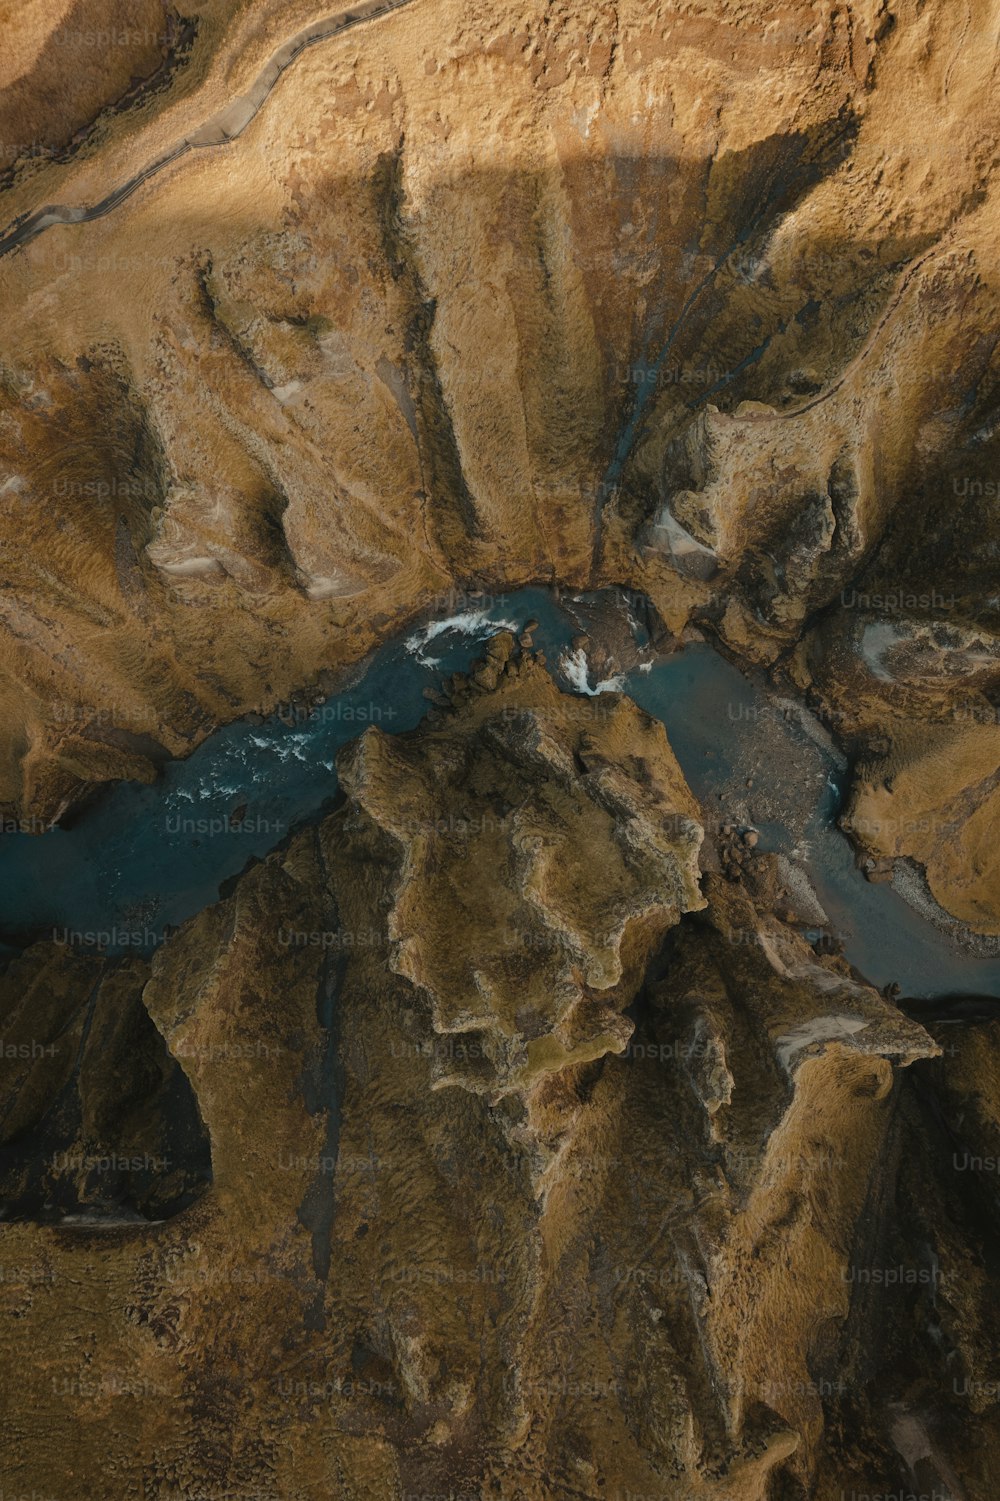 협곡에 있는 강의 조감도